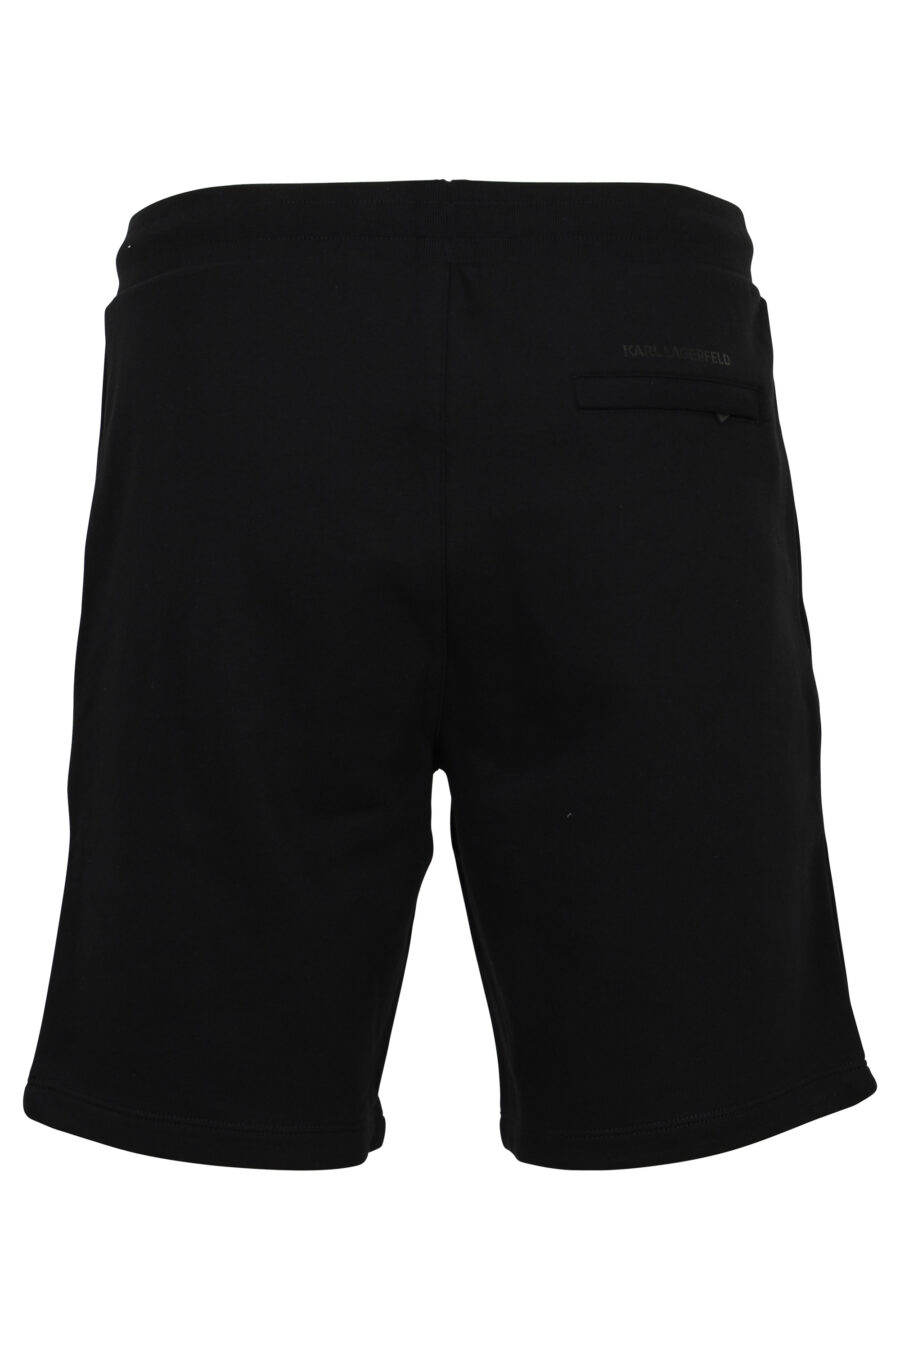 Pantalón de chándal corto negro con minilogo "ikonik" - 4062225691858 2